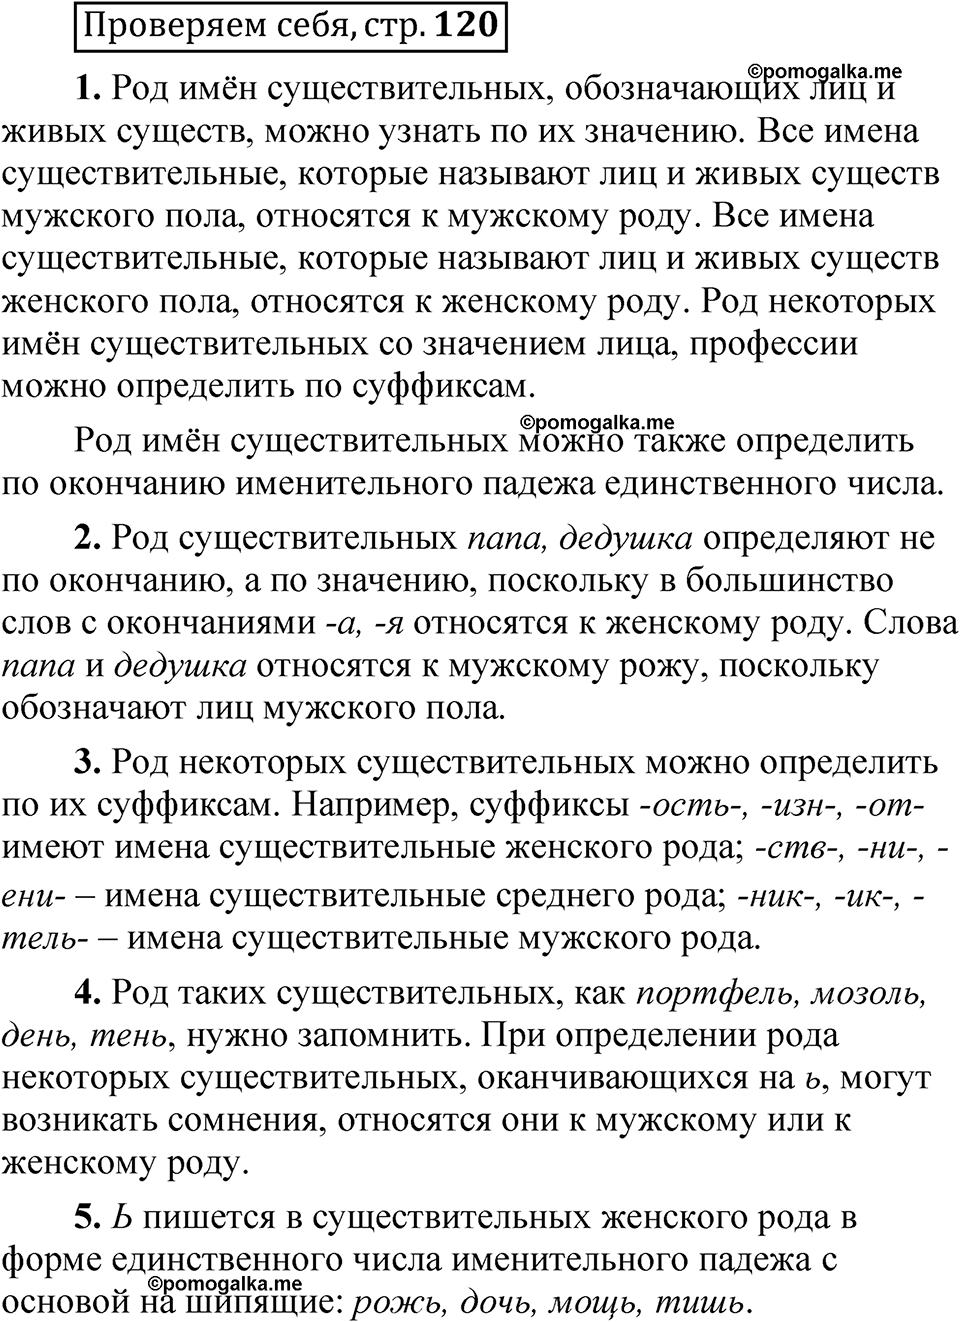 страница 120 Проверяем себя русский язык 5 класс Быстрова, Кибирева 2 часть 2021 год